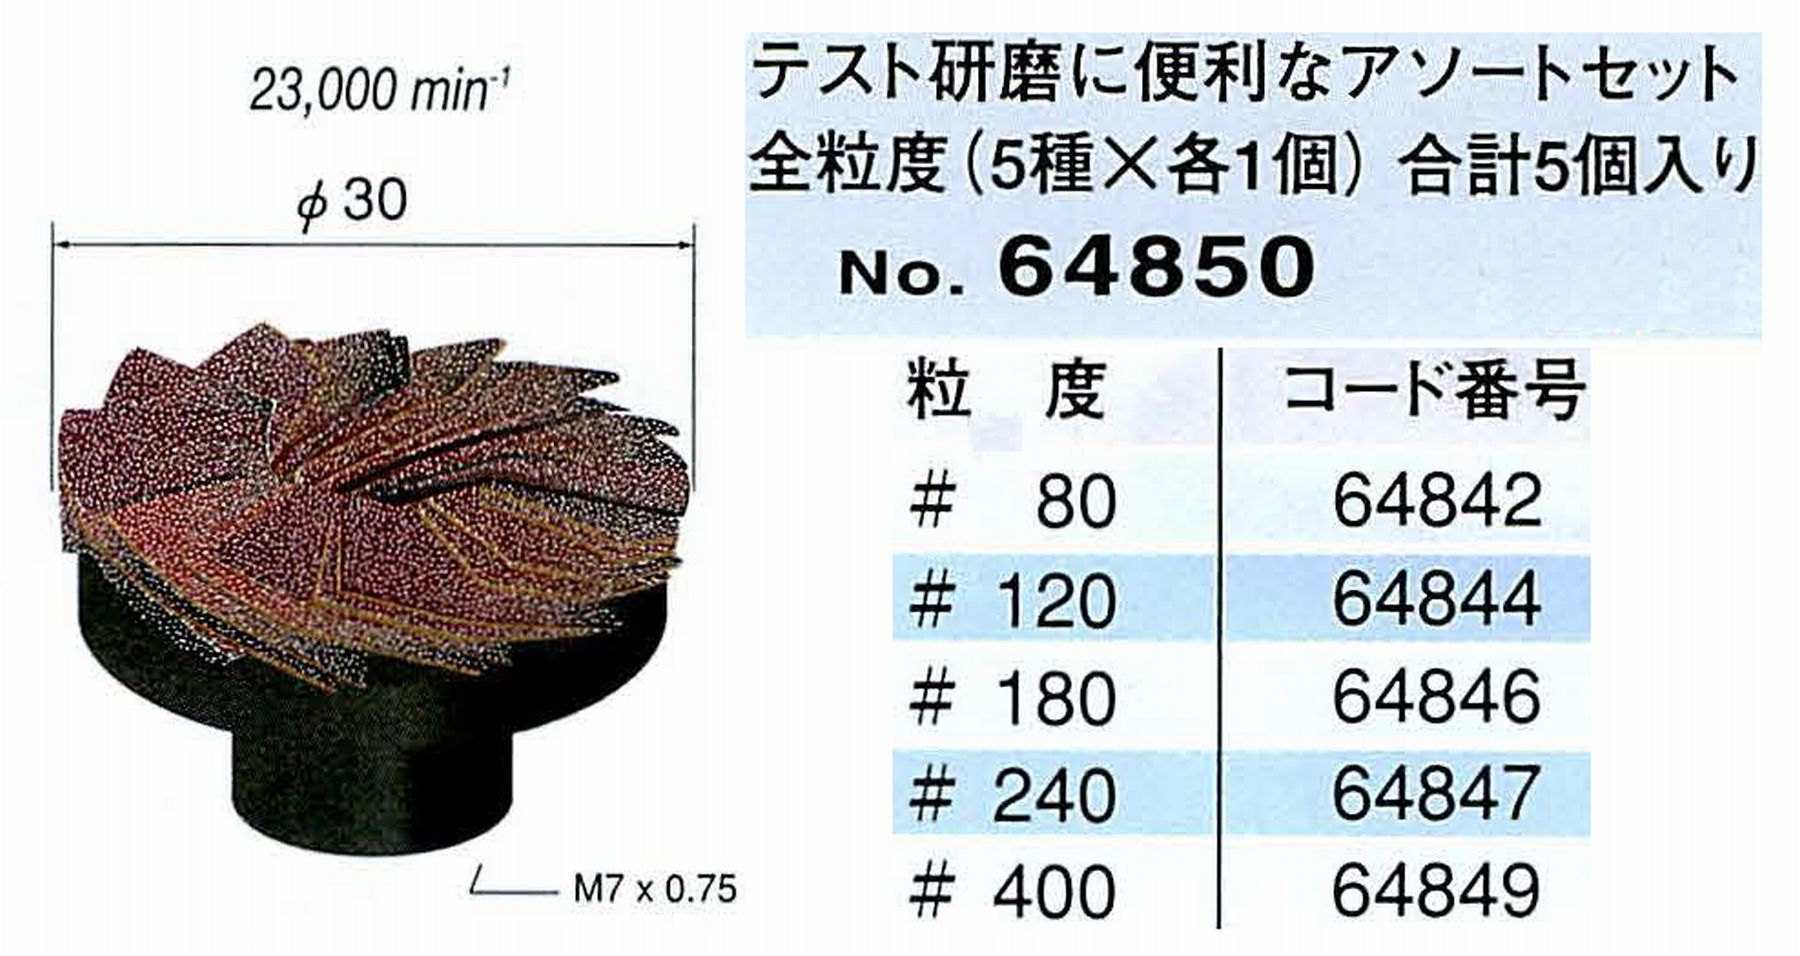 ナカニシ/NAKANISHI エコモ・インパルス専用工具 ポリサンド アソートセット 全粒度(5種×各1個) 64850